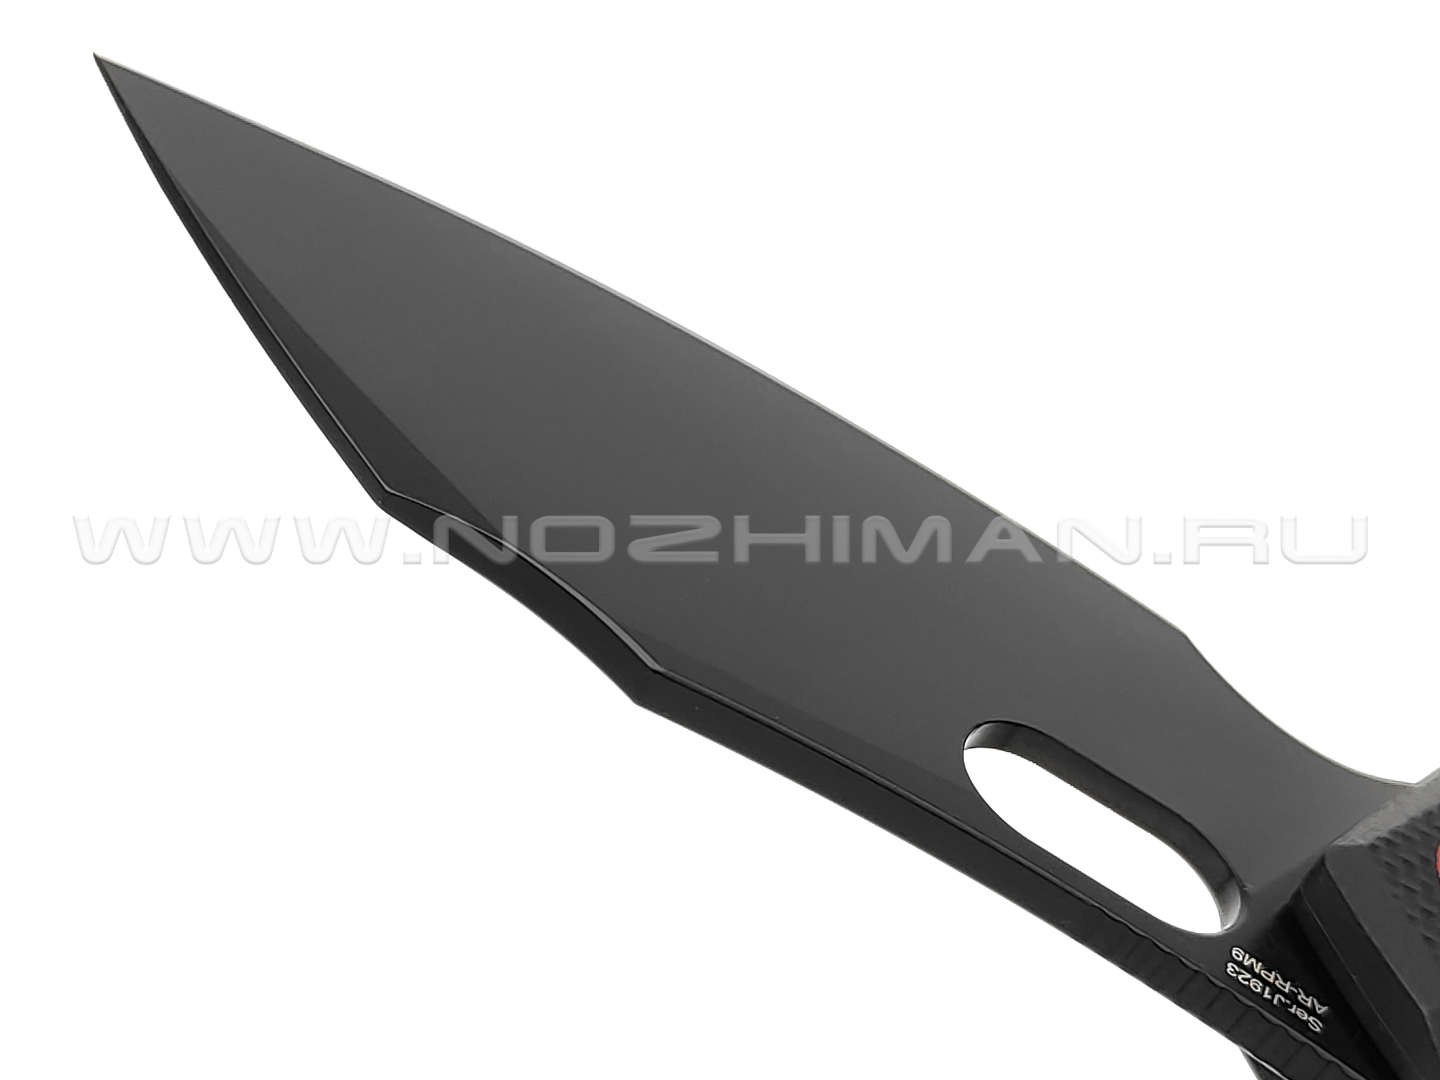 Нож CJRB Caldera J1923-BBU сталь AR-RPM9, рукоять G10 black & navy